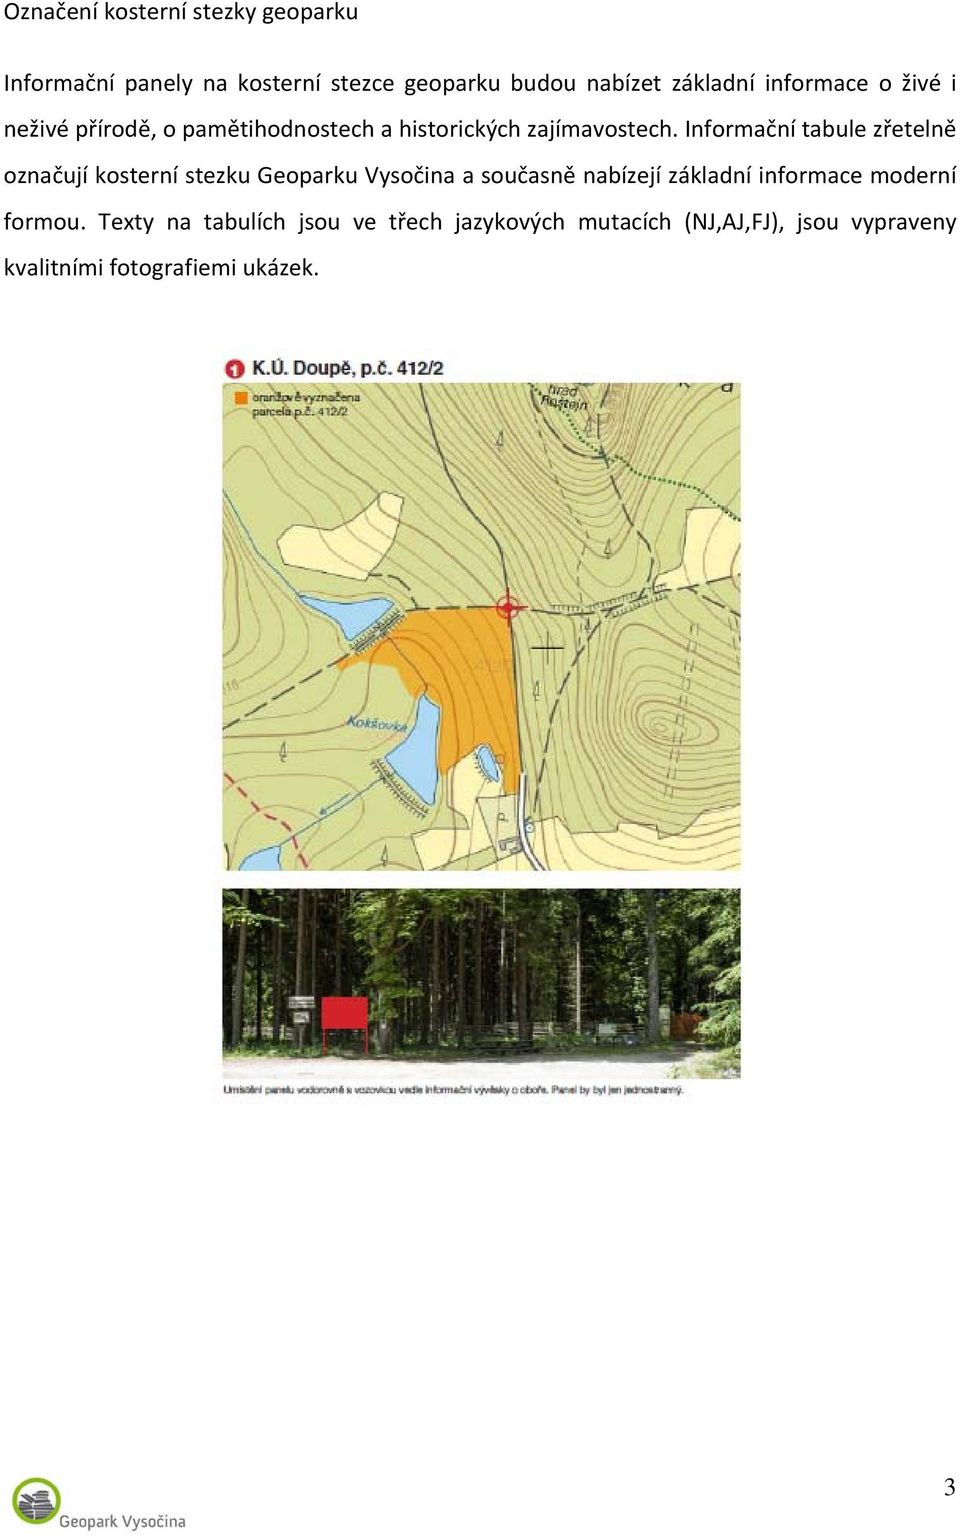 Informační tabule zřetelně označují kosterní stezku Geoparku Vysočina a současně nabízejí základní